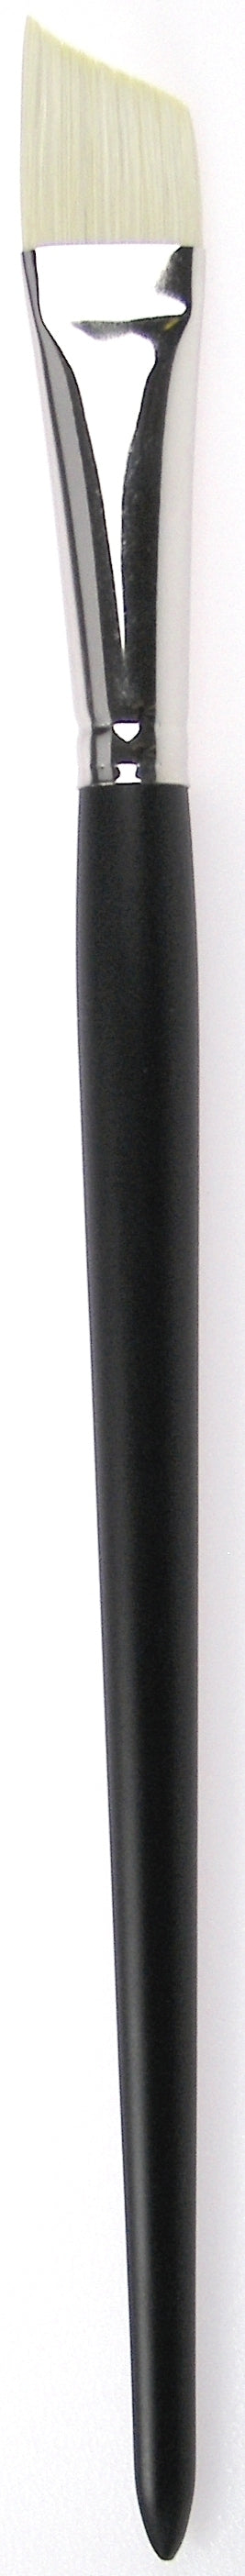 Zahn Oil-Acrylic Brush Angular, Brislon, 9958 Size 6